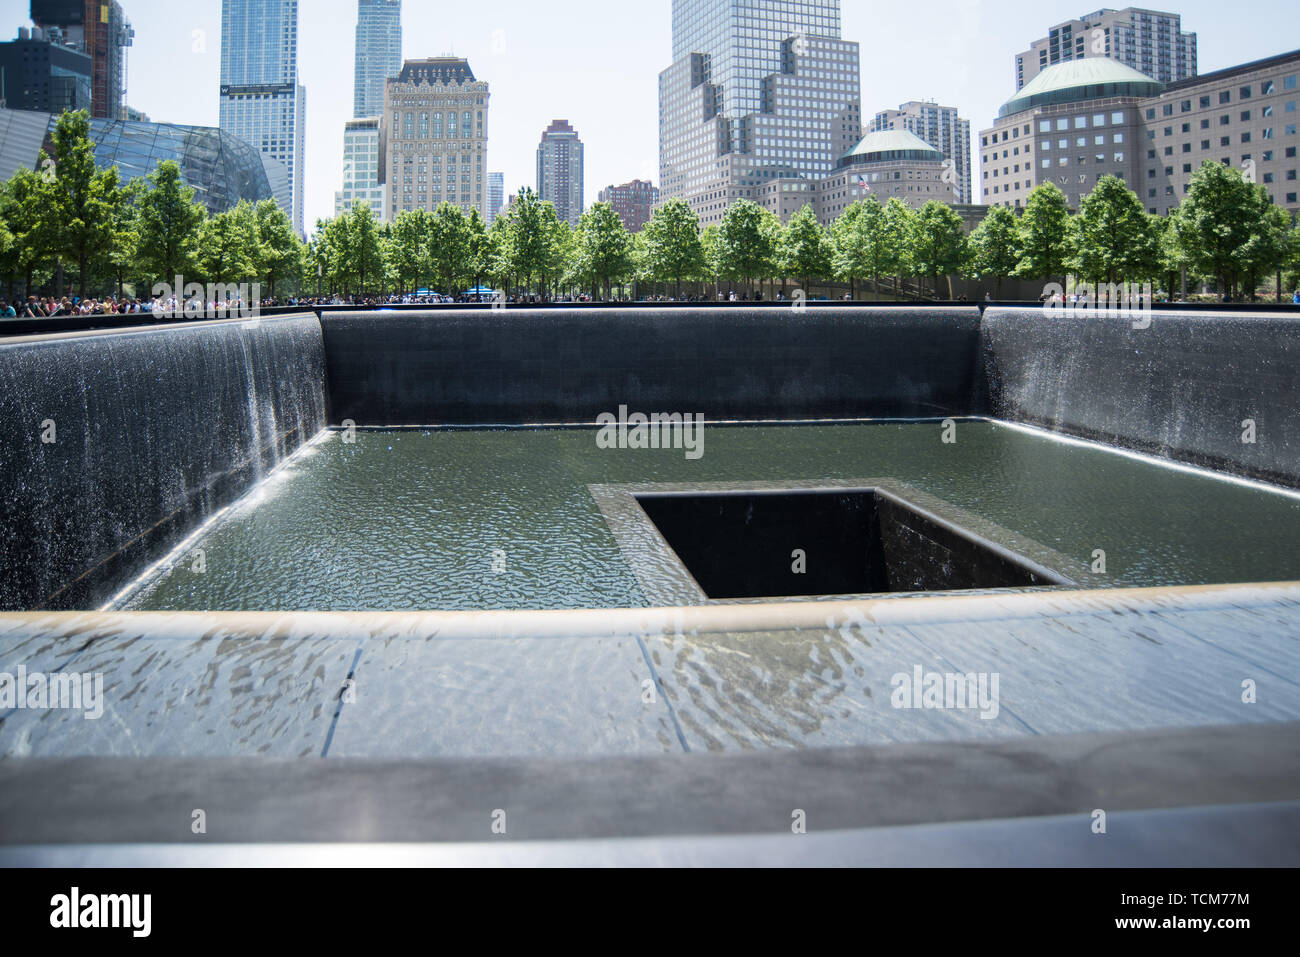 911 Memorial in New York Stock Photo